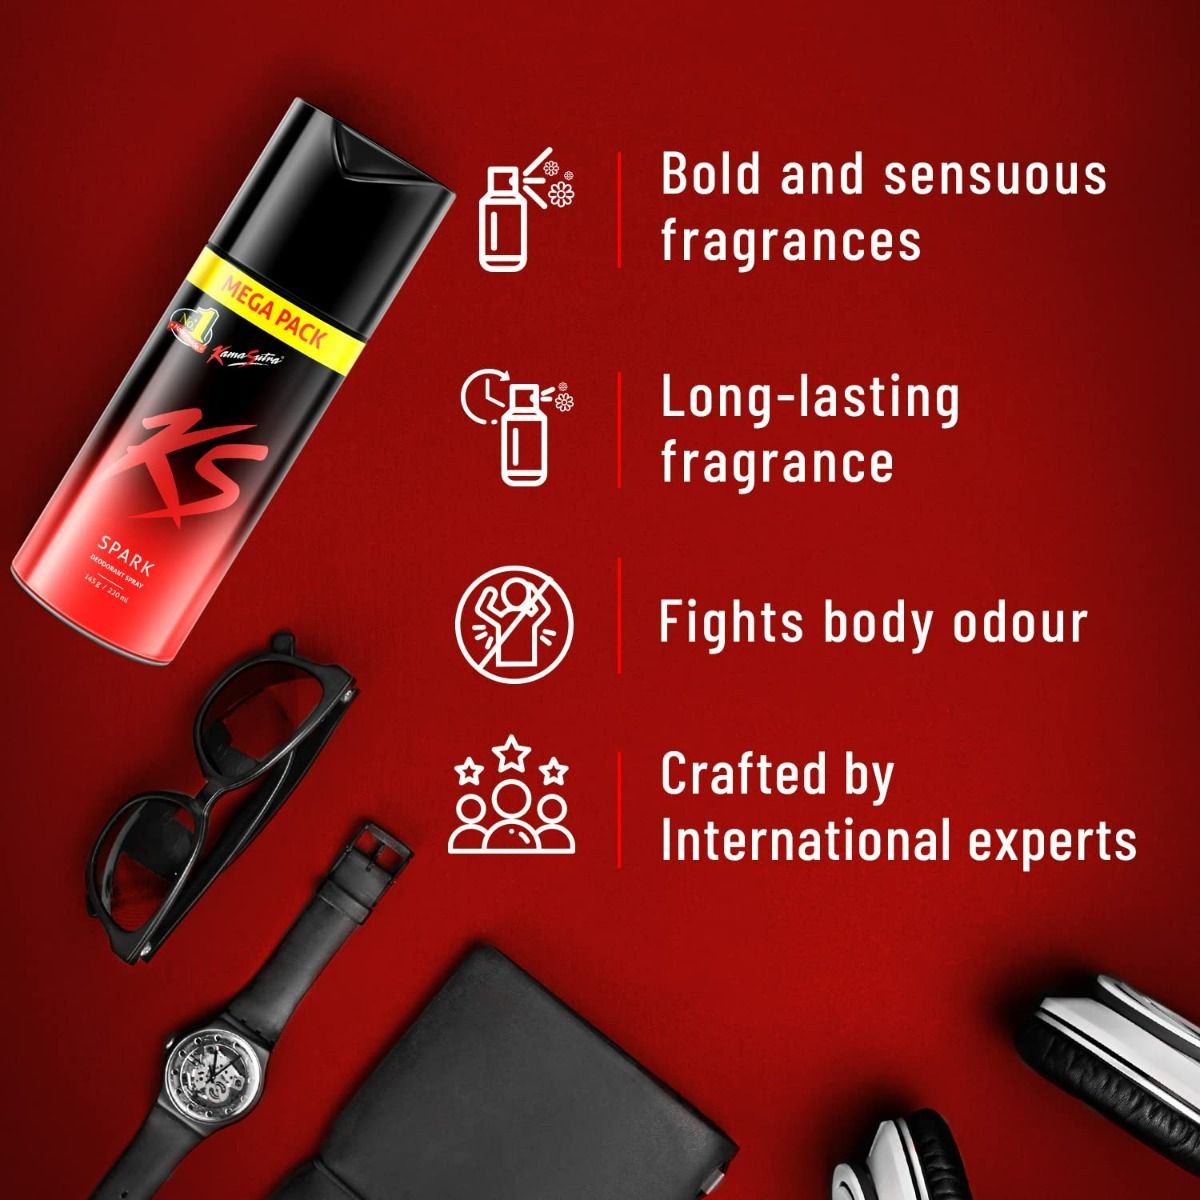 Kamasutra Spark Deodorant Body Spray For Men, 220 ml, Pack of 1 